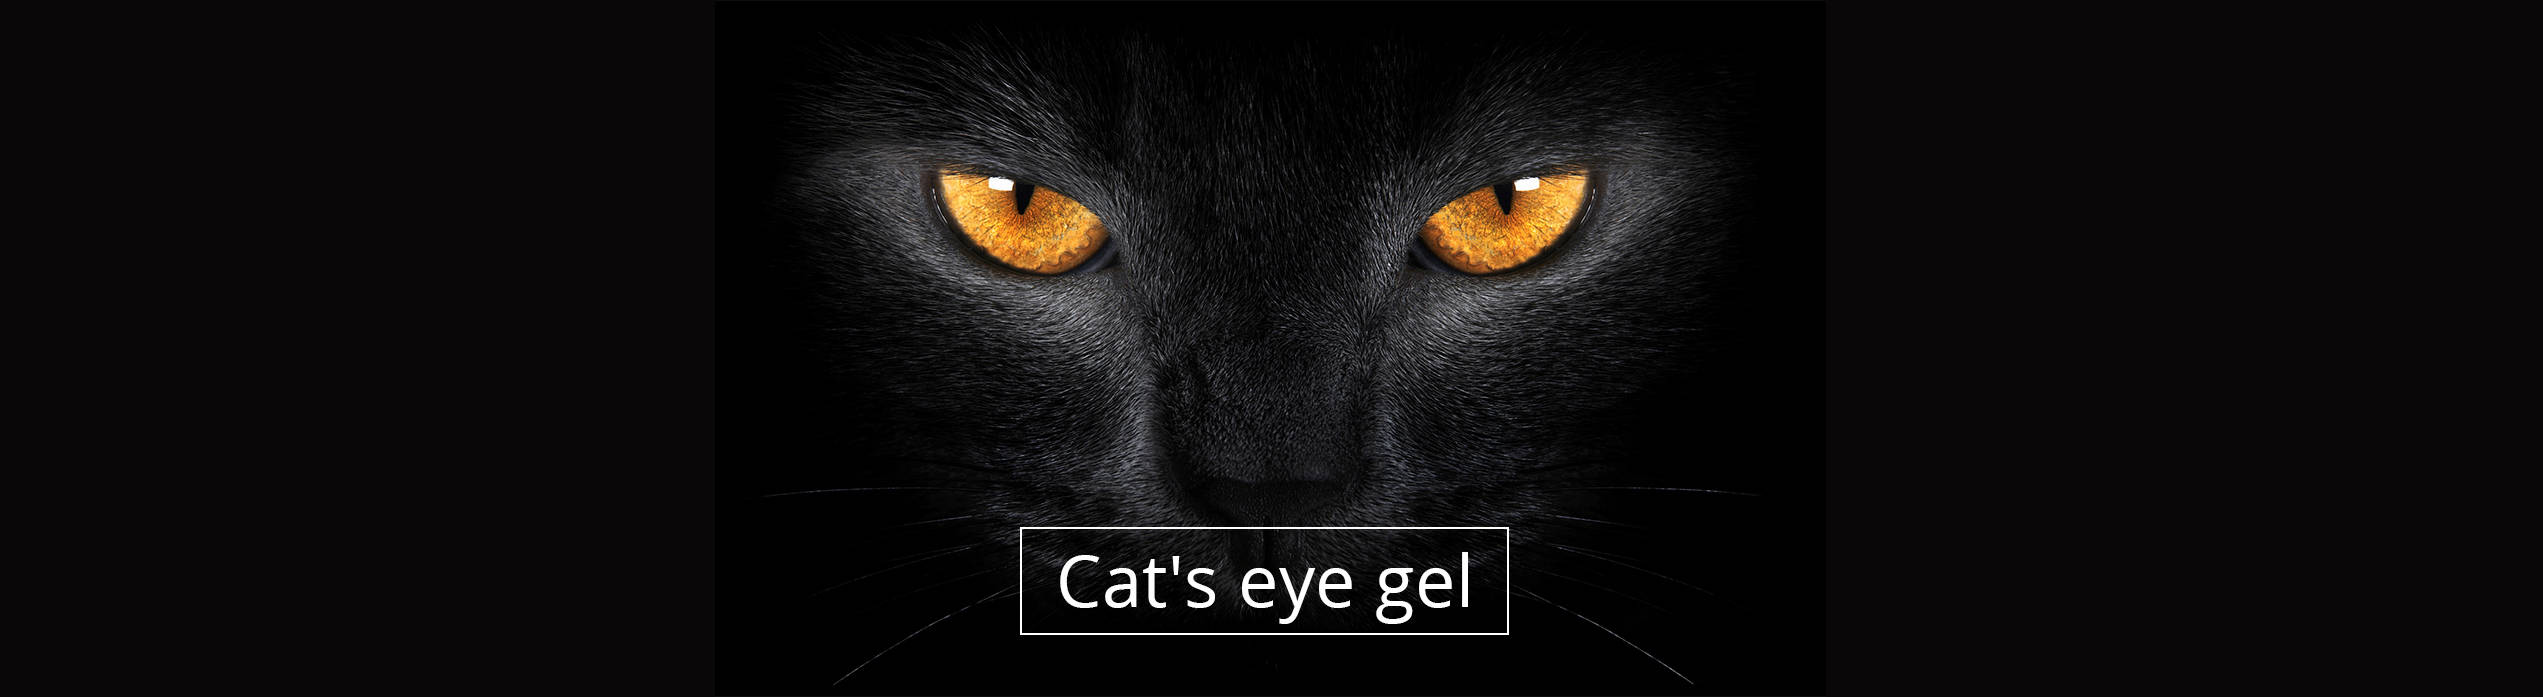 Кошачьи глаза арт